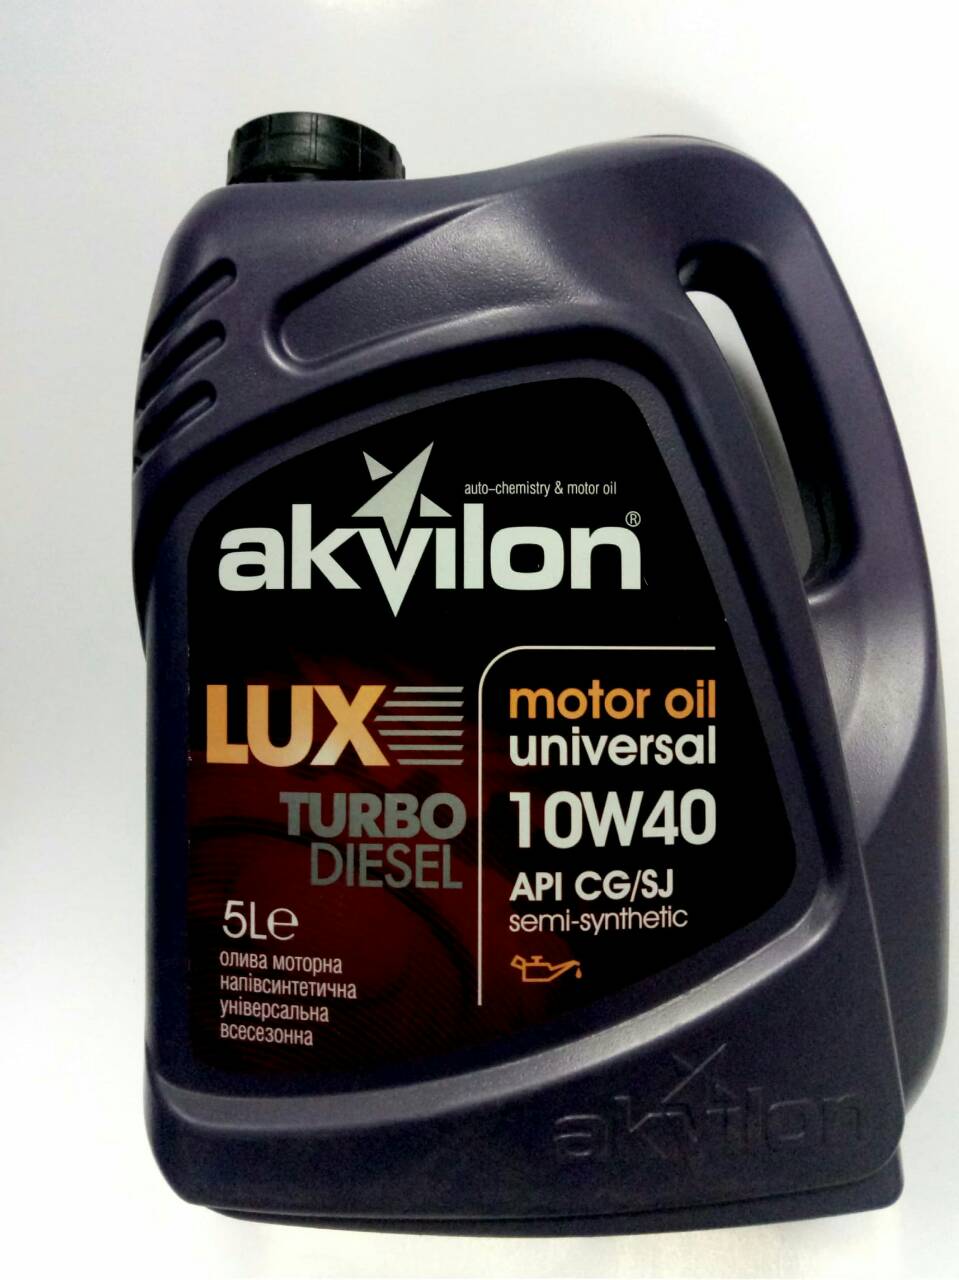 Akvilon 4820095201009 Engine oil Akvilon LUX TURBO DIESEL 10W-40, 5L 4820095201009